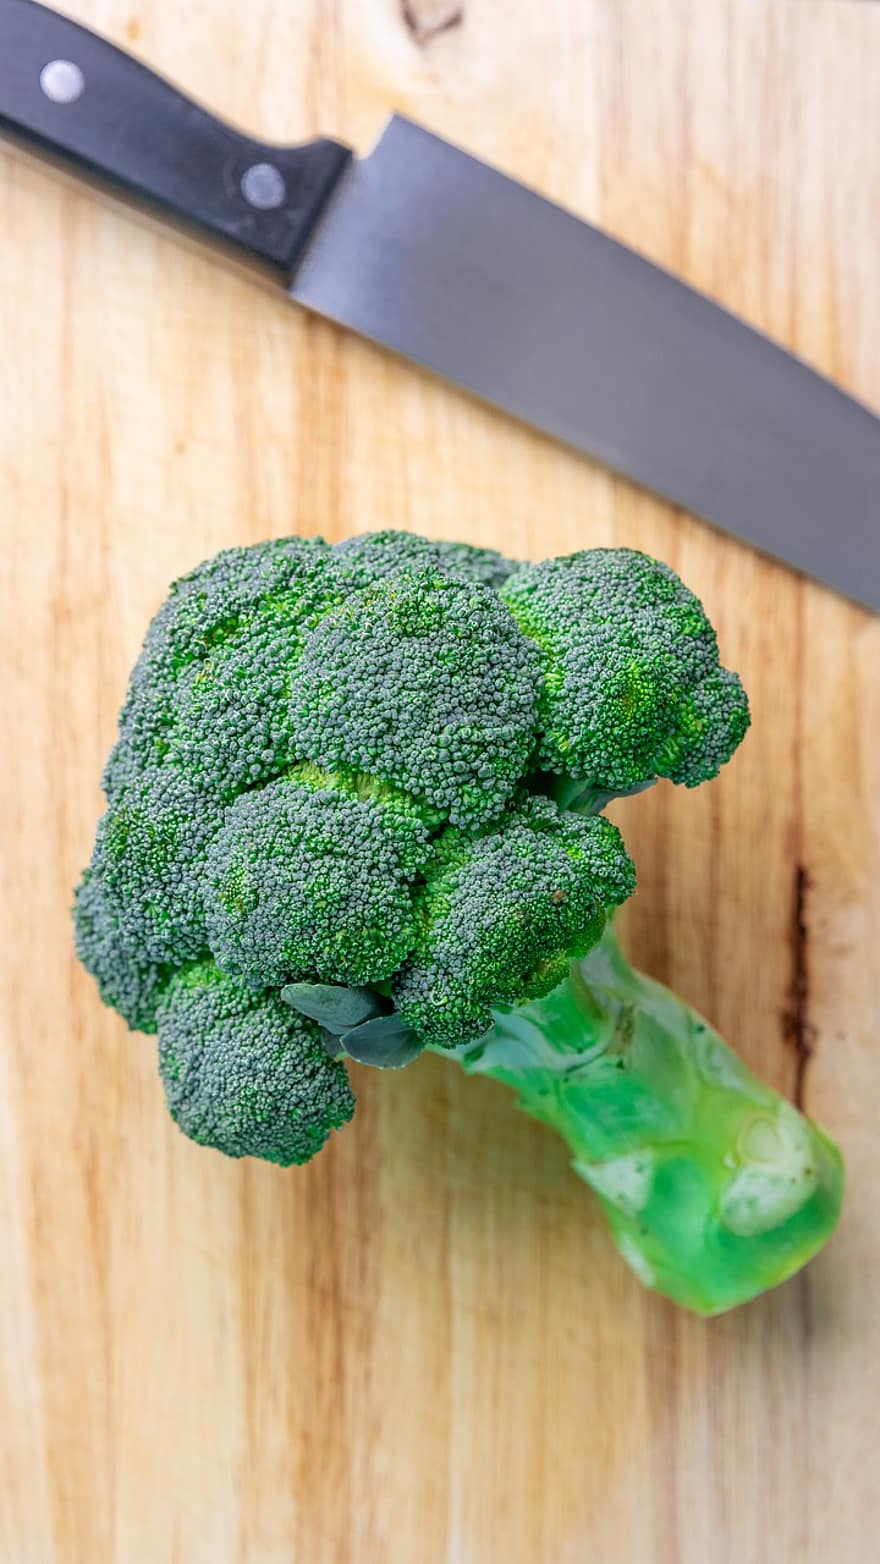 brokuły, warzywo, zdrowy, surowy, organiczny, wegetariański, odżywianie